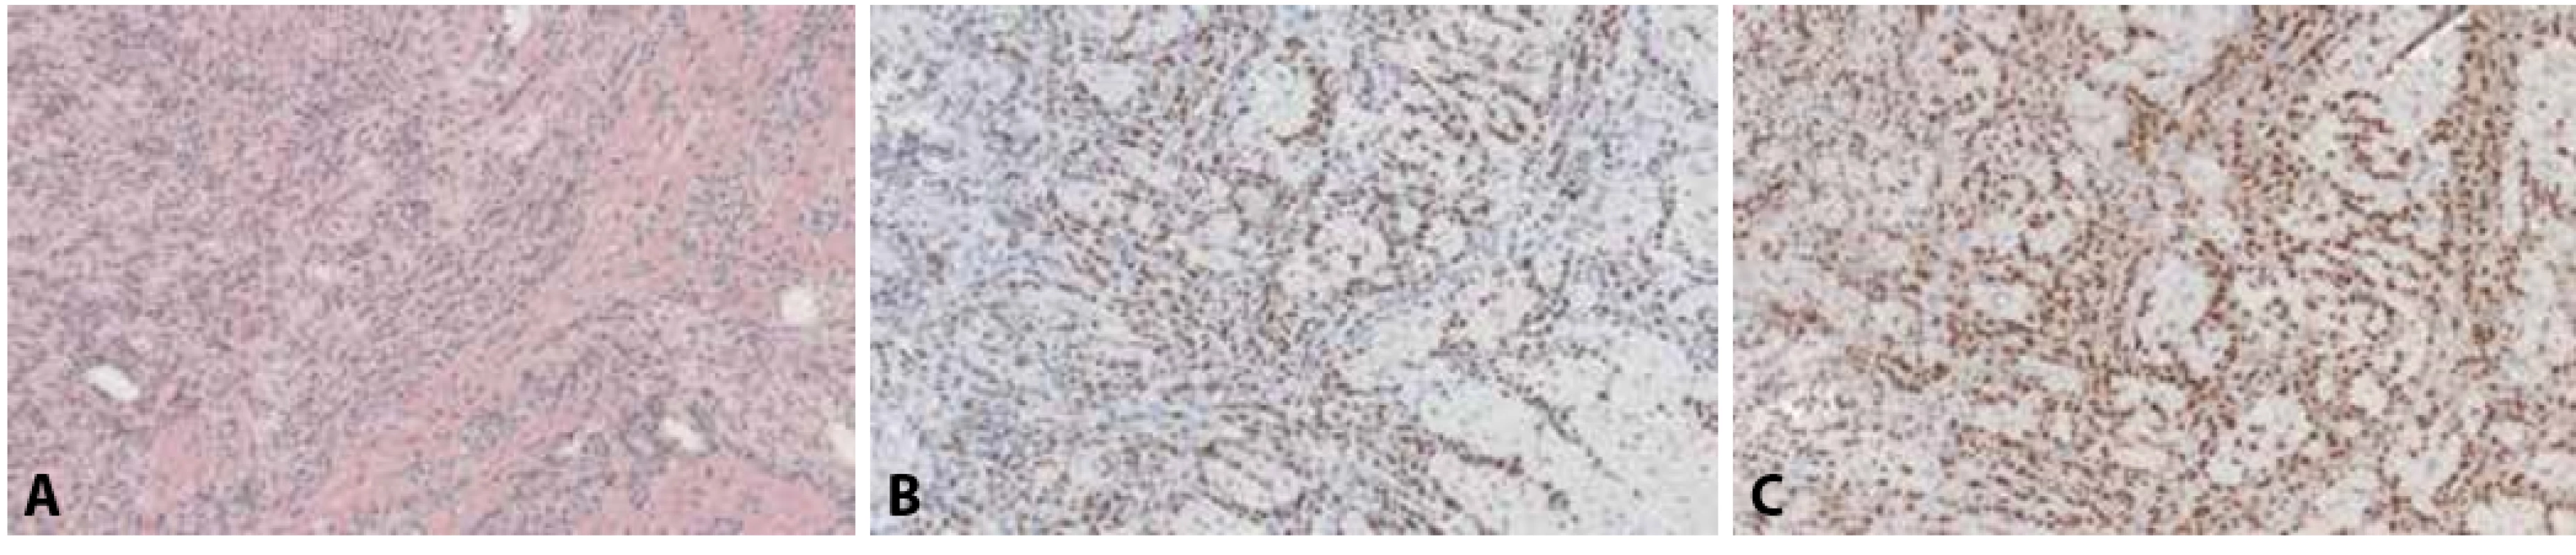 A: Metastatický lobulární karcinom prsu v myokardu, klinicky a na zobrazovacích metodách mimikující myokarditidu (hematoxylin & eosin, 100x). B: Jaderná pozitivita nádorových buněk v imunohistochemickém průkazu antigenu GATA3 (100x). C: Jaderná pozitivita nádorových buněk v imunohistochemickém průkazu estrogenových receptorů (100x).